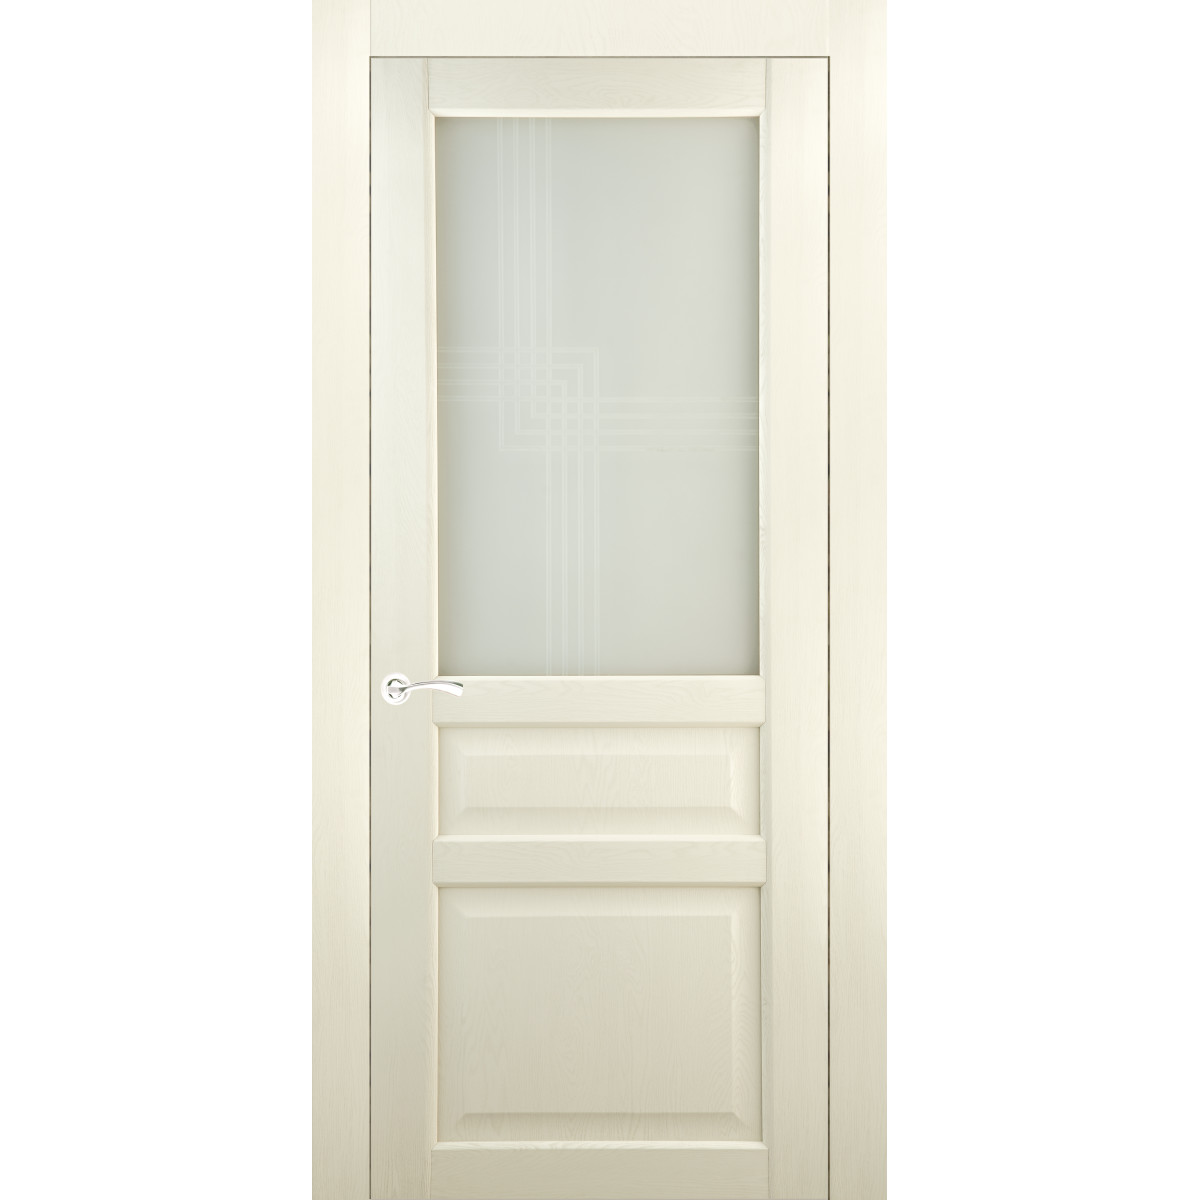 Дверь межкомнатная остеклённая Artens Мария 70x200 см, ПВХ, цвет айвори, с замком в комплекте